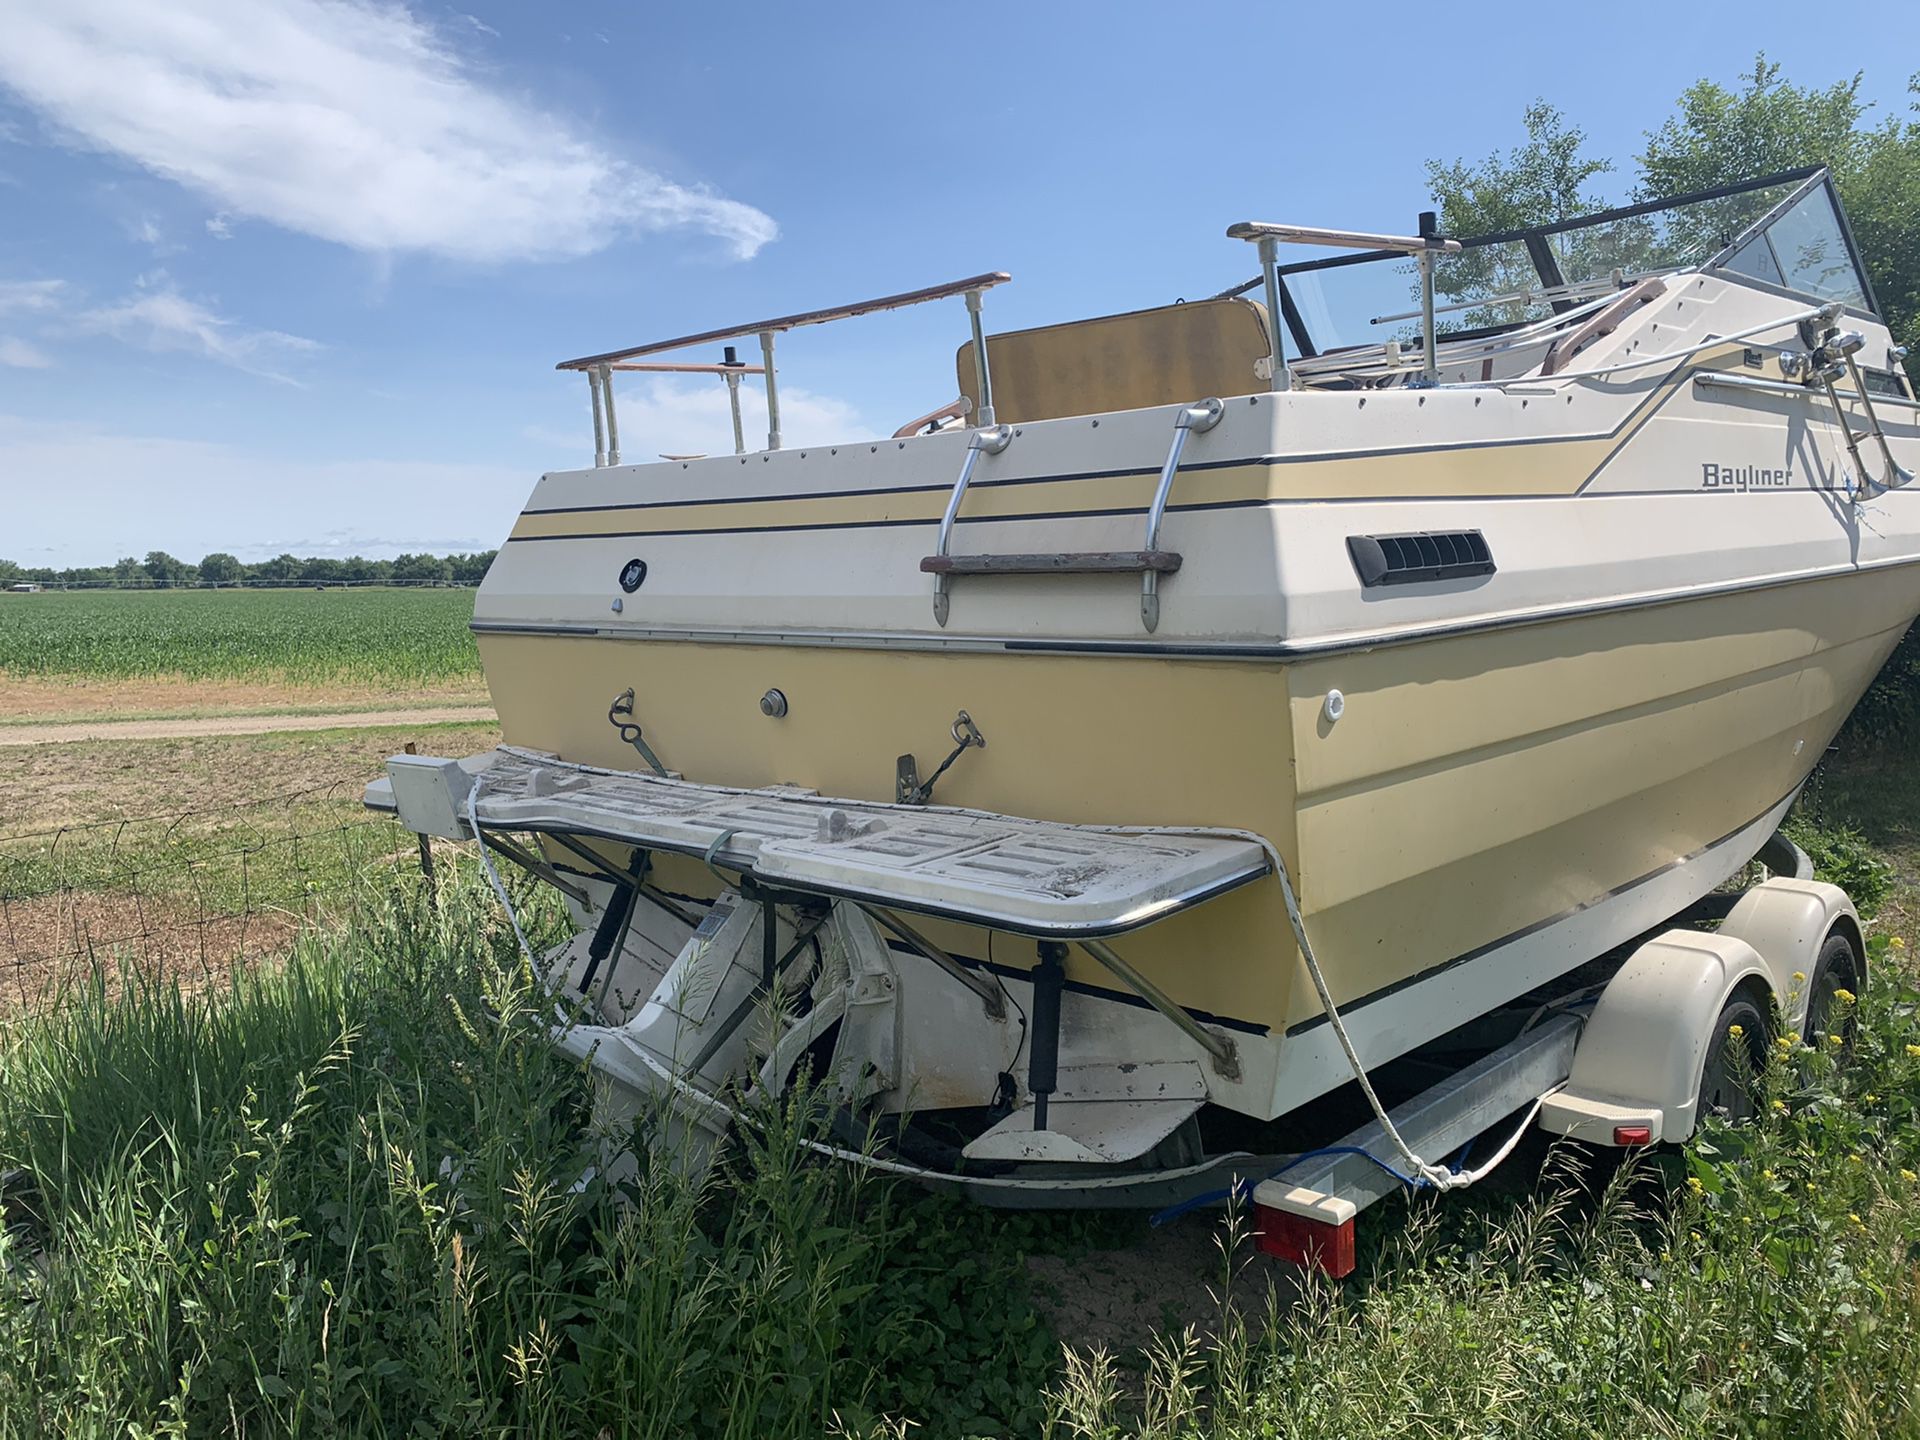 Photo 18 ft Bayliner Skaget boat and trailer.